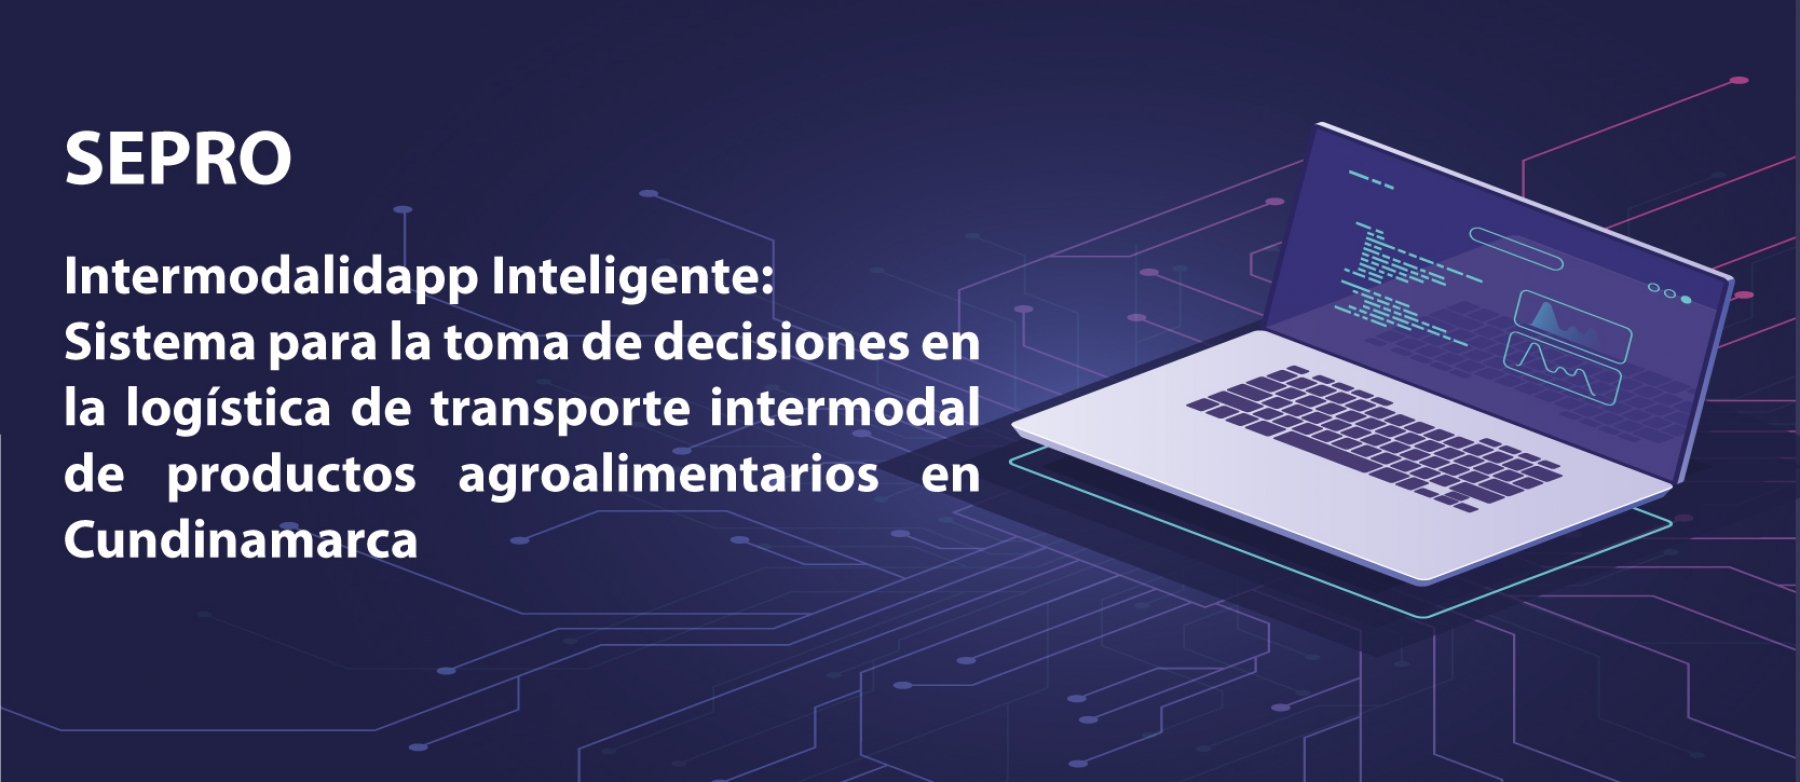 Intermodalidapp Inteligente: Sistema para la toma de decisiones en la logística de transporte intermodal de productos agroalimentarios en Cundinamarca